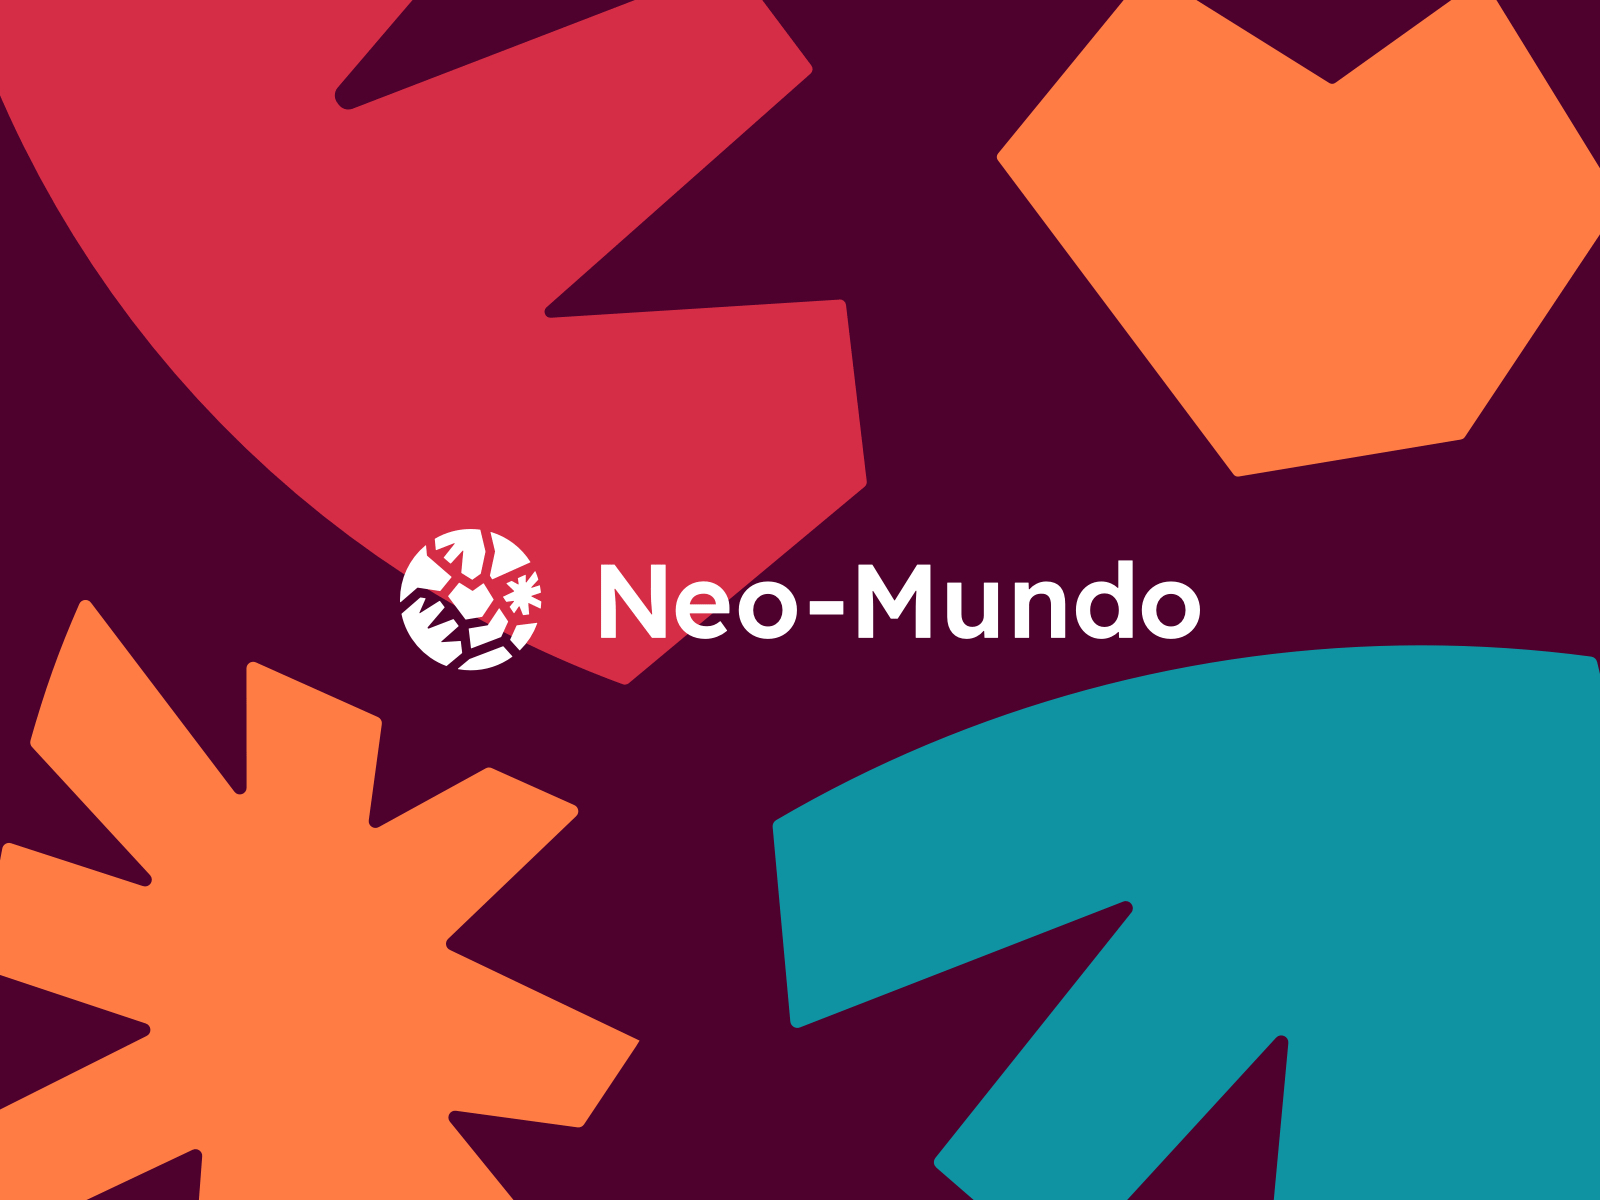 Neo-Mundo Branding